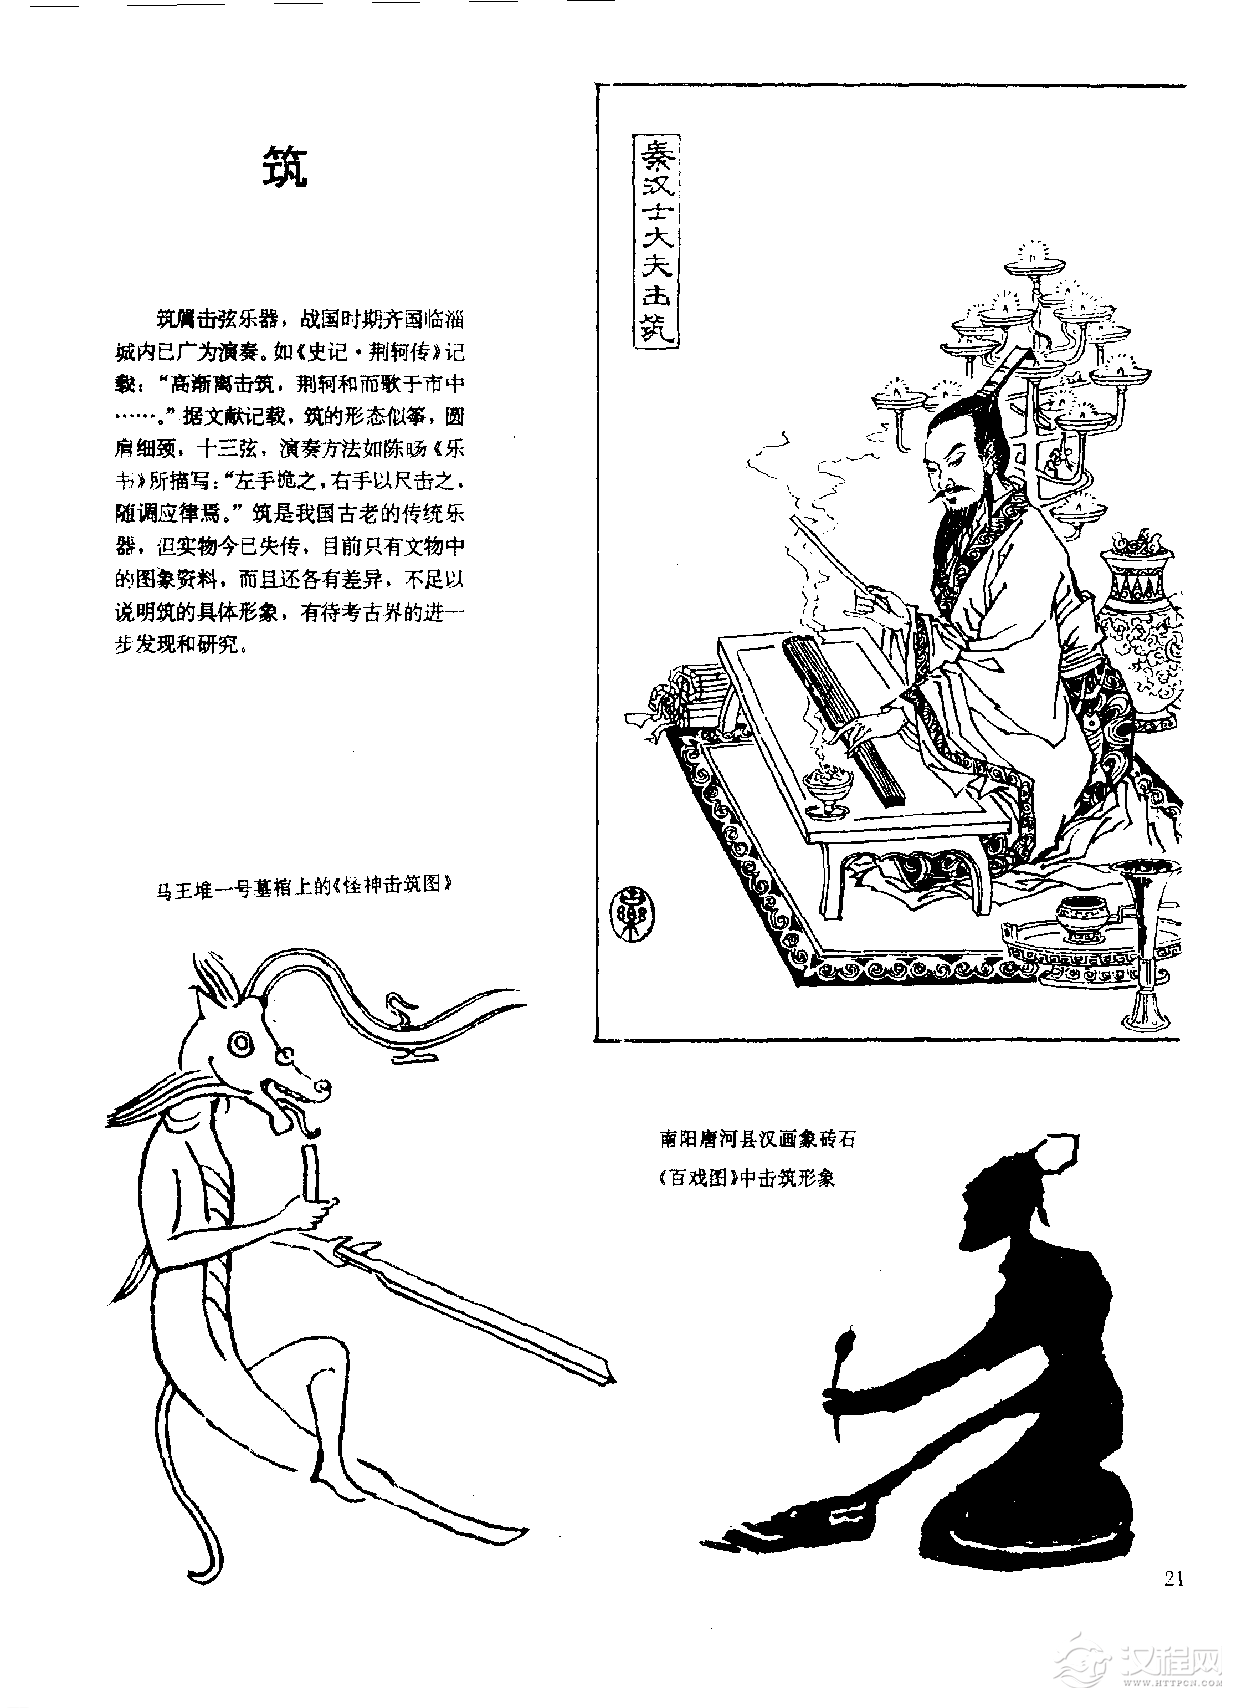 中国古代乐器《筑》